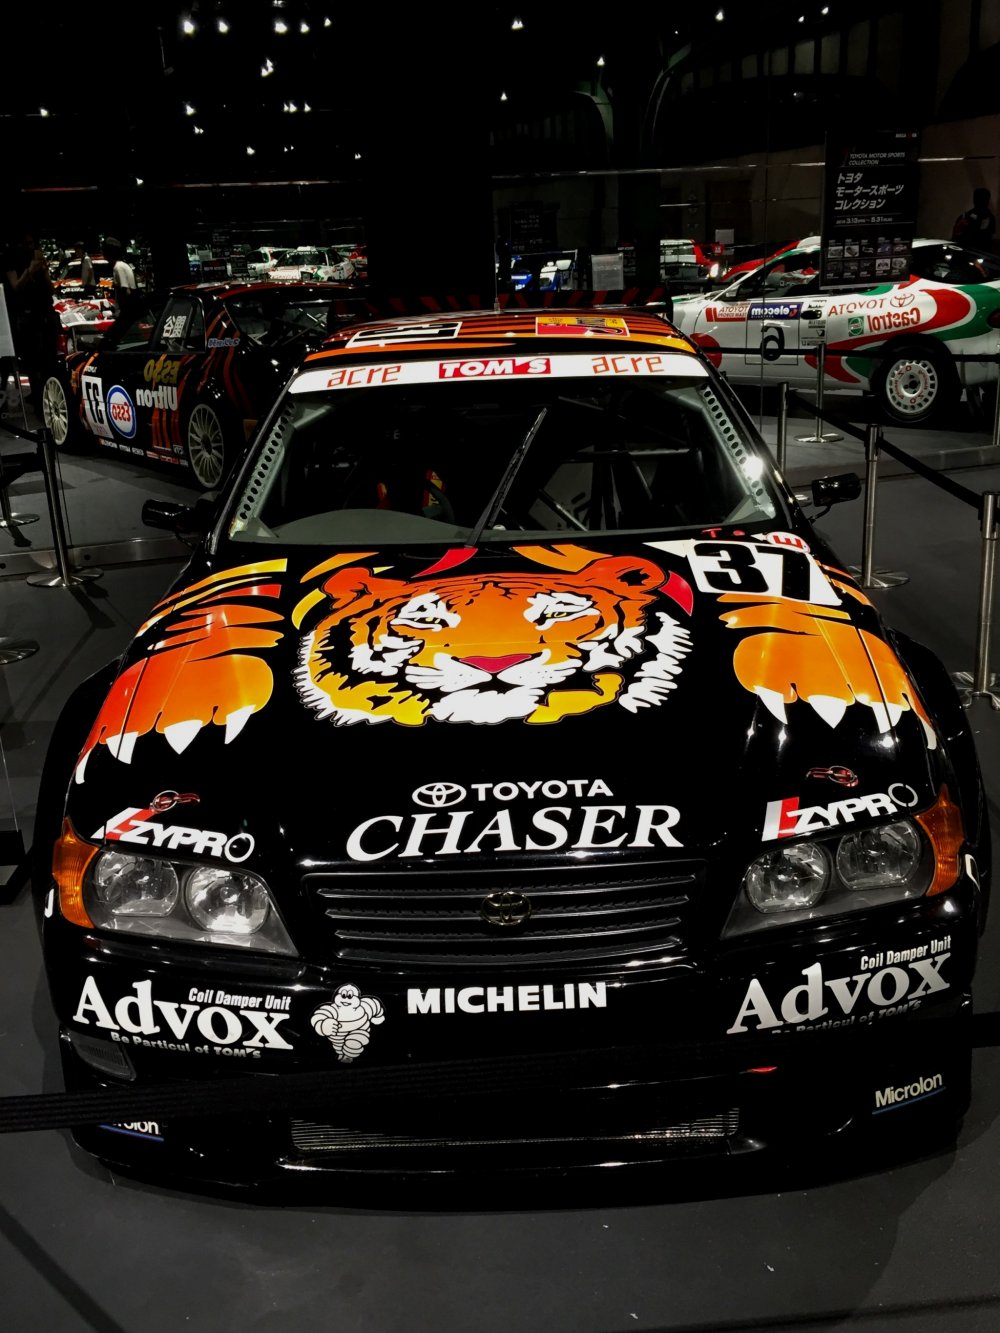 Тойота Chaser 1998 года. Тигр на капоте только усиливает остроту ощущений